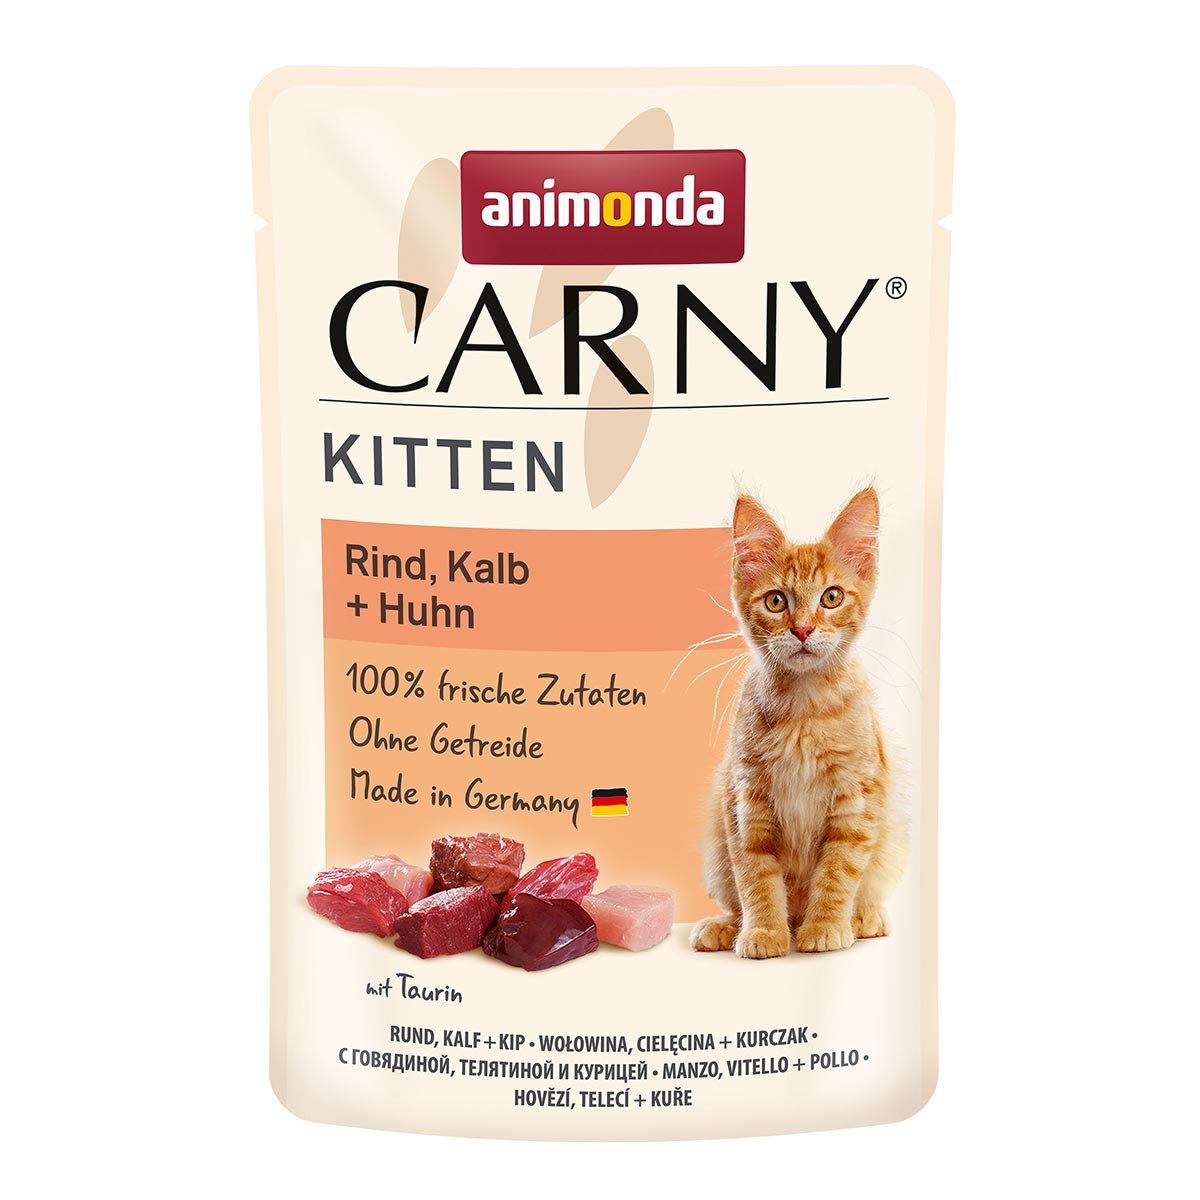 animonda Carny Kitten Rind